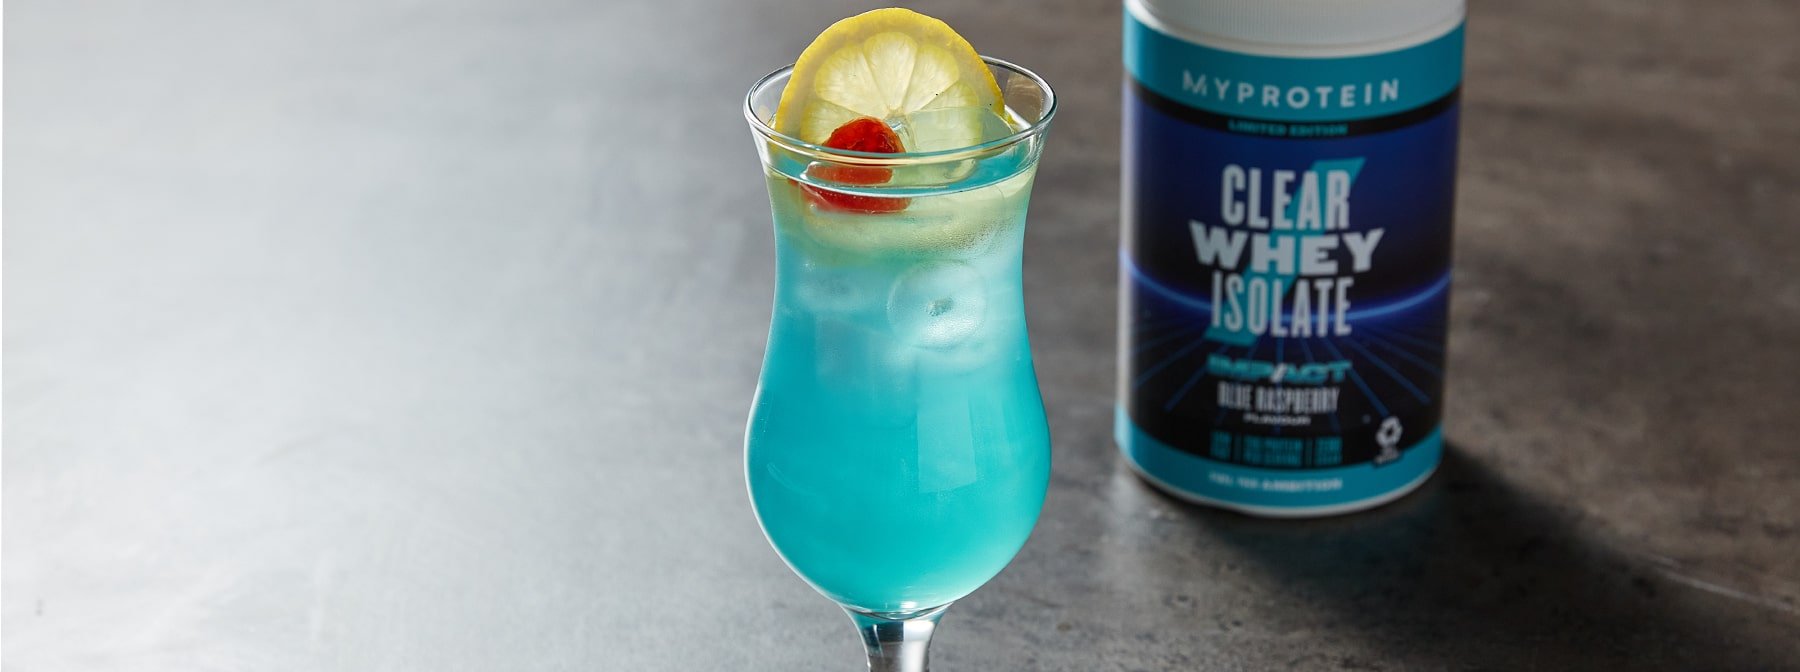 Kék málnás Clear Whey Isolate | Fedezd fel a nyár ízét 2 recept segítségével!